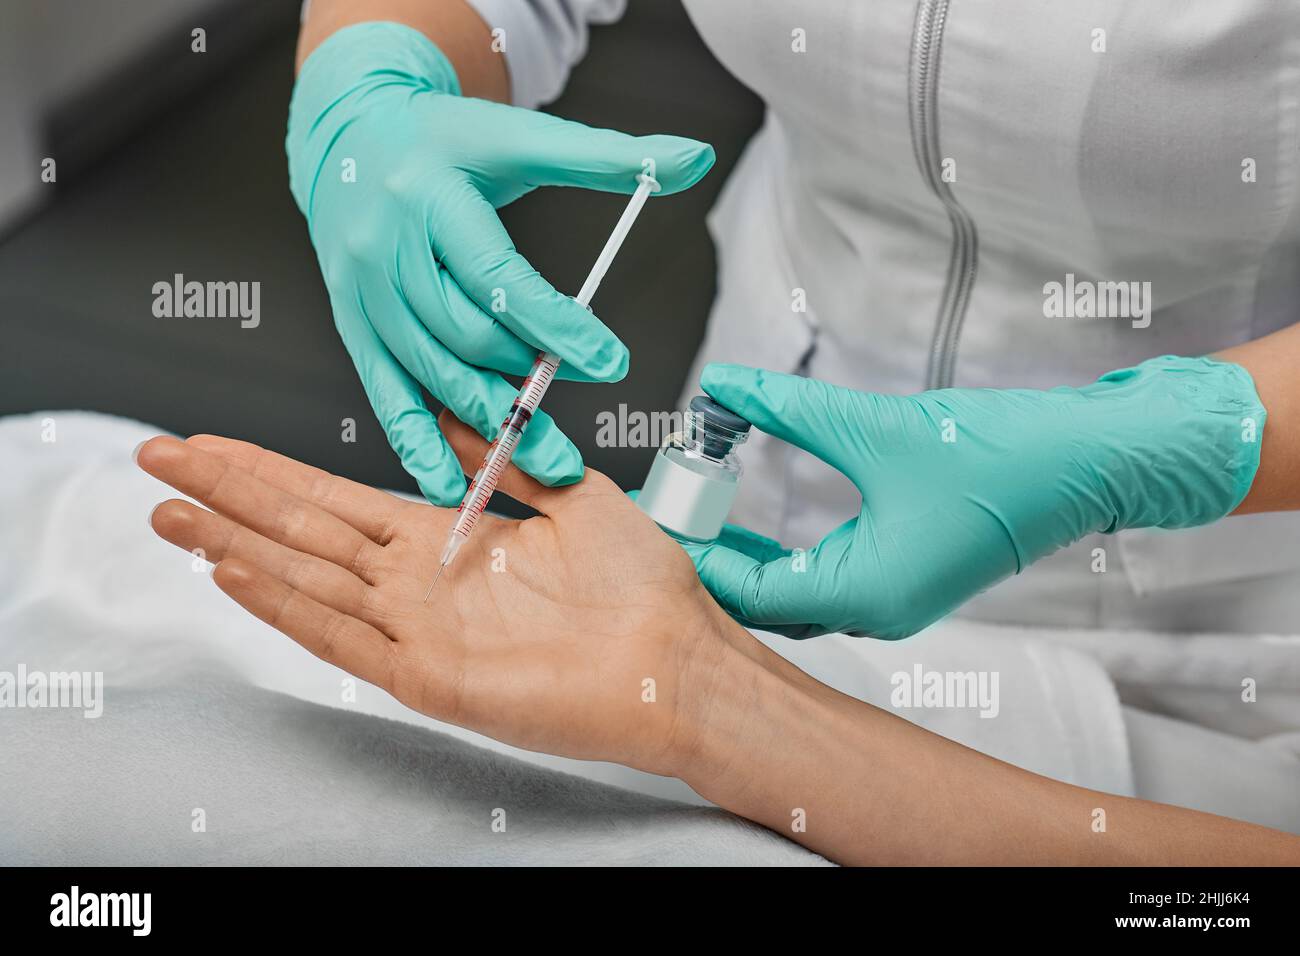 Traitement de l'hyperhidrose palmar.Main de la femme pendant l'injection de toxine botulinique dans la paume pour traiter l'hyperhidrose de paume Banque D'Images